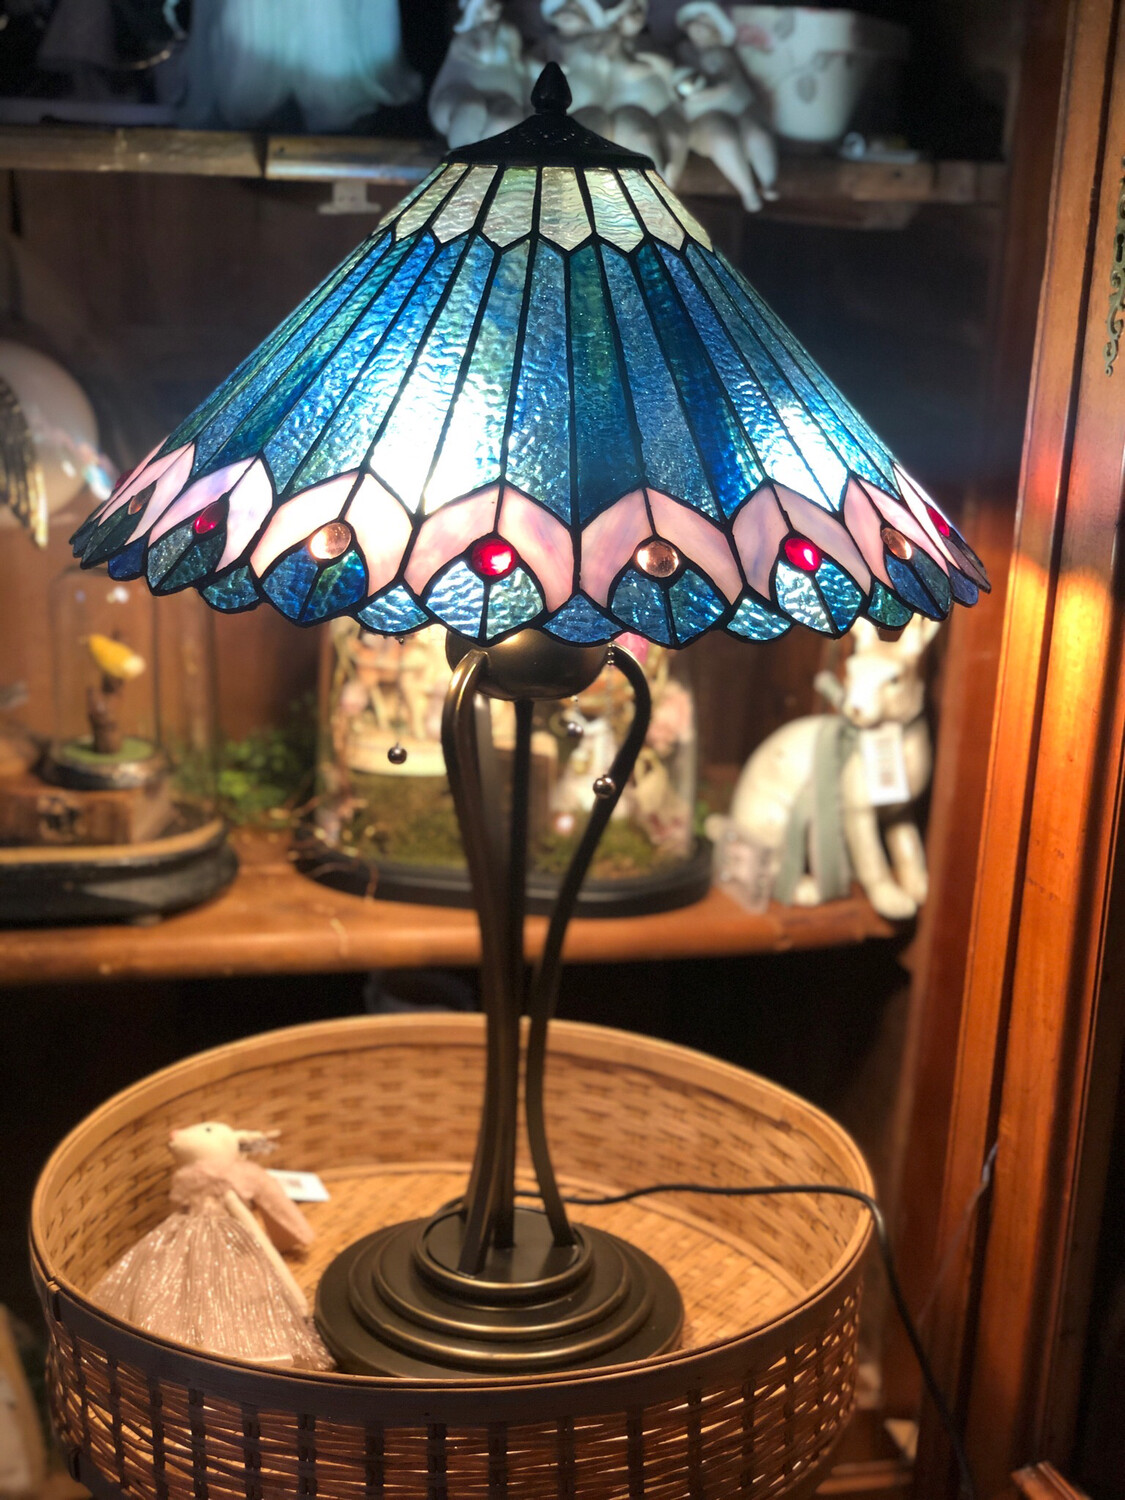 Lampe Tiffany, vitraux de verre, pieds en métal, 80 cm de haut, 3 chaînes  pour allumer les 3 ampoules